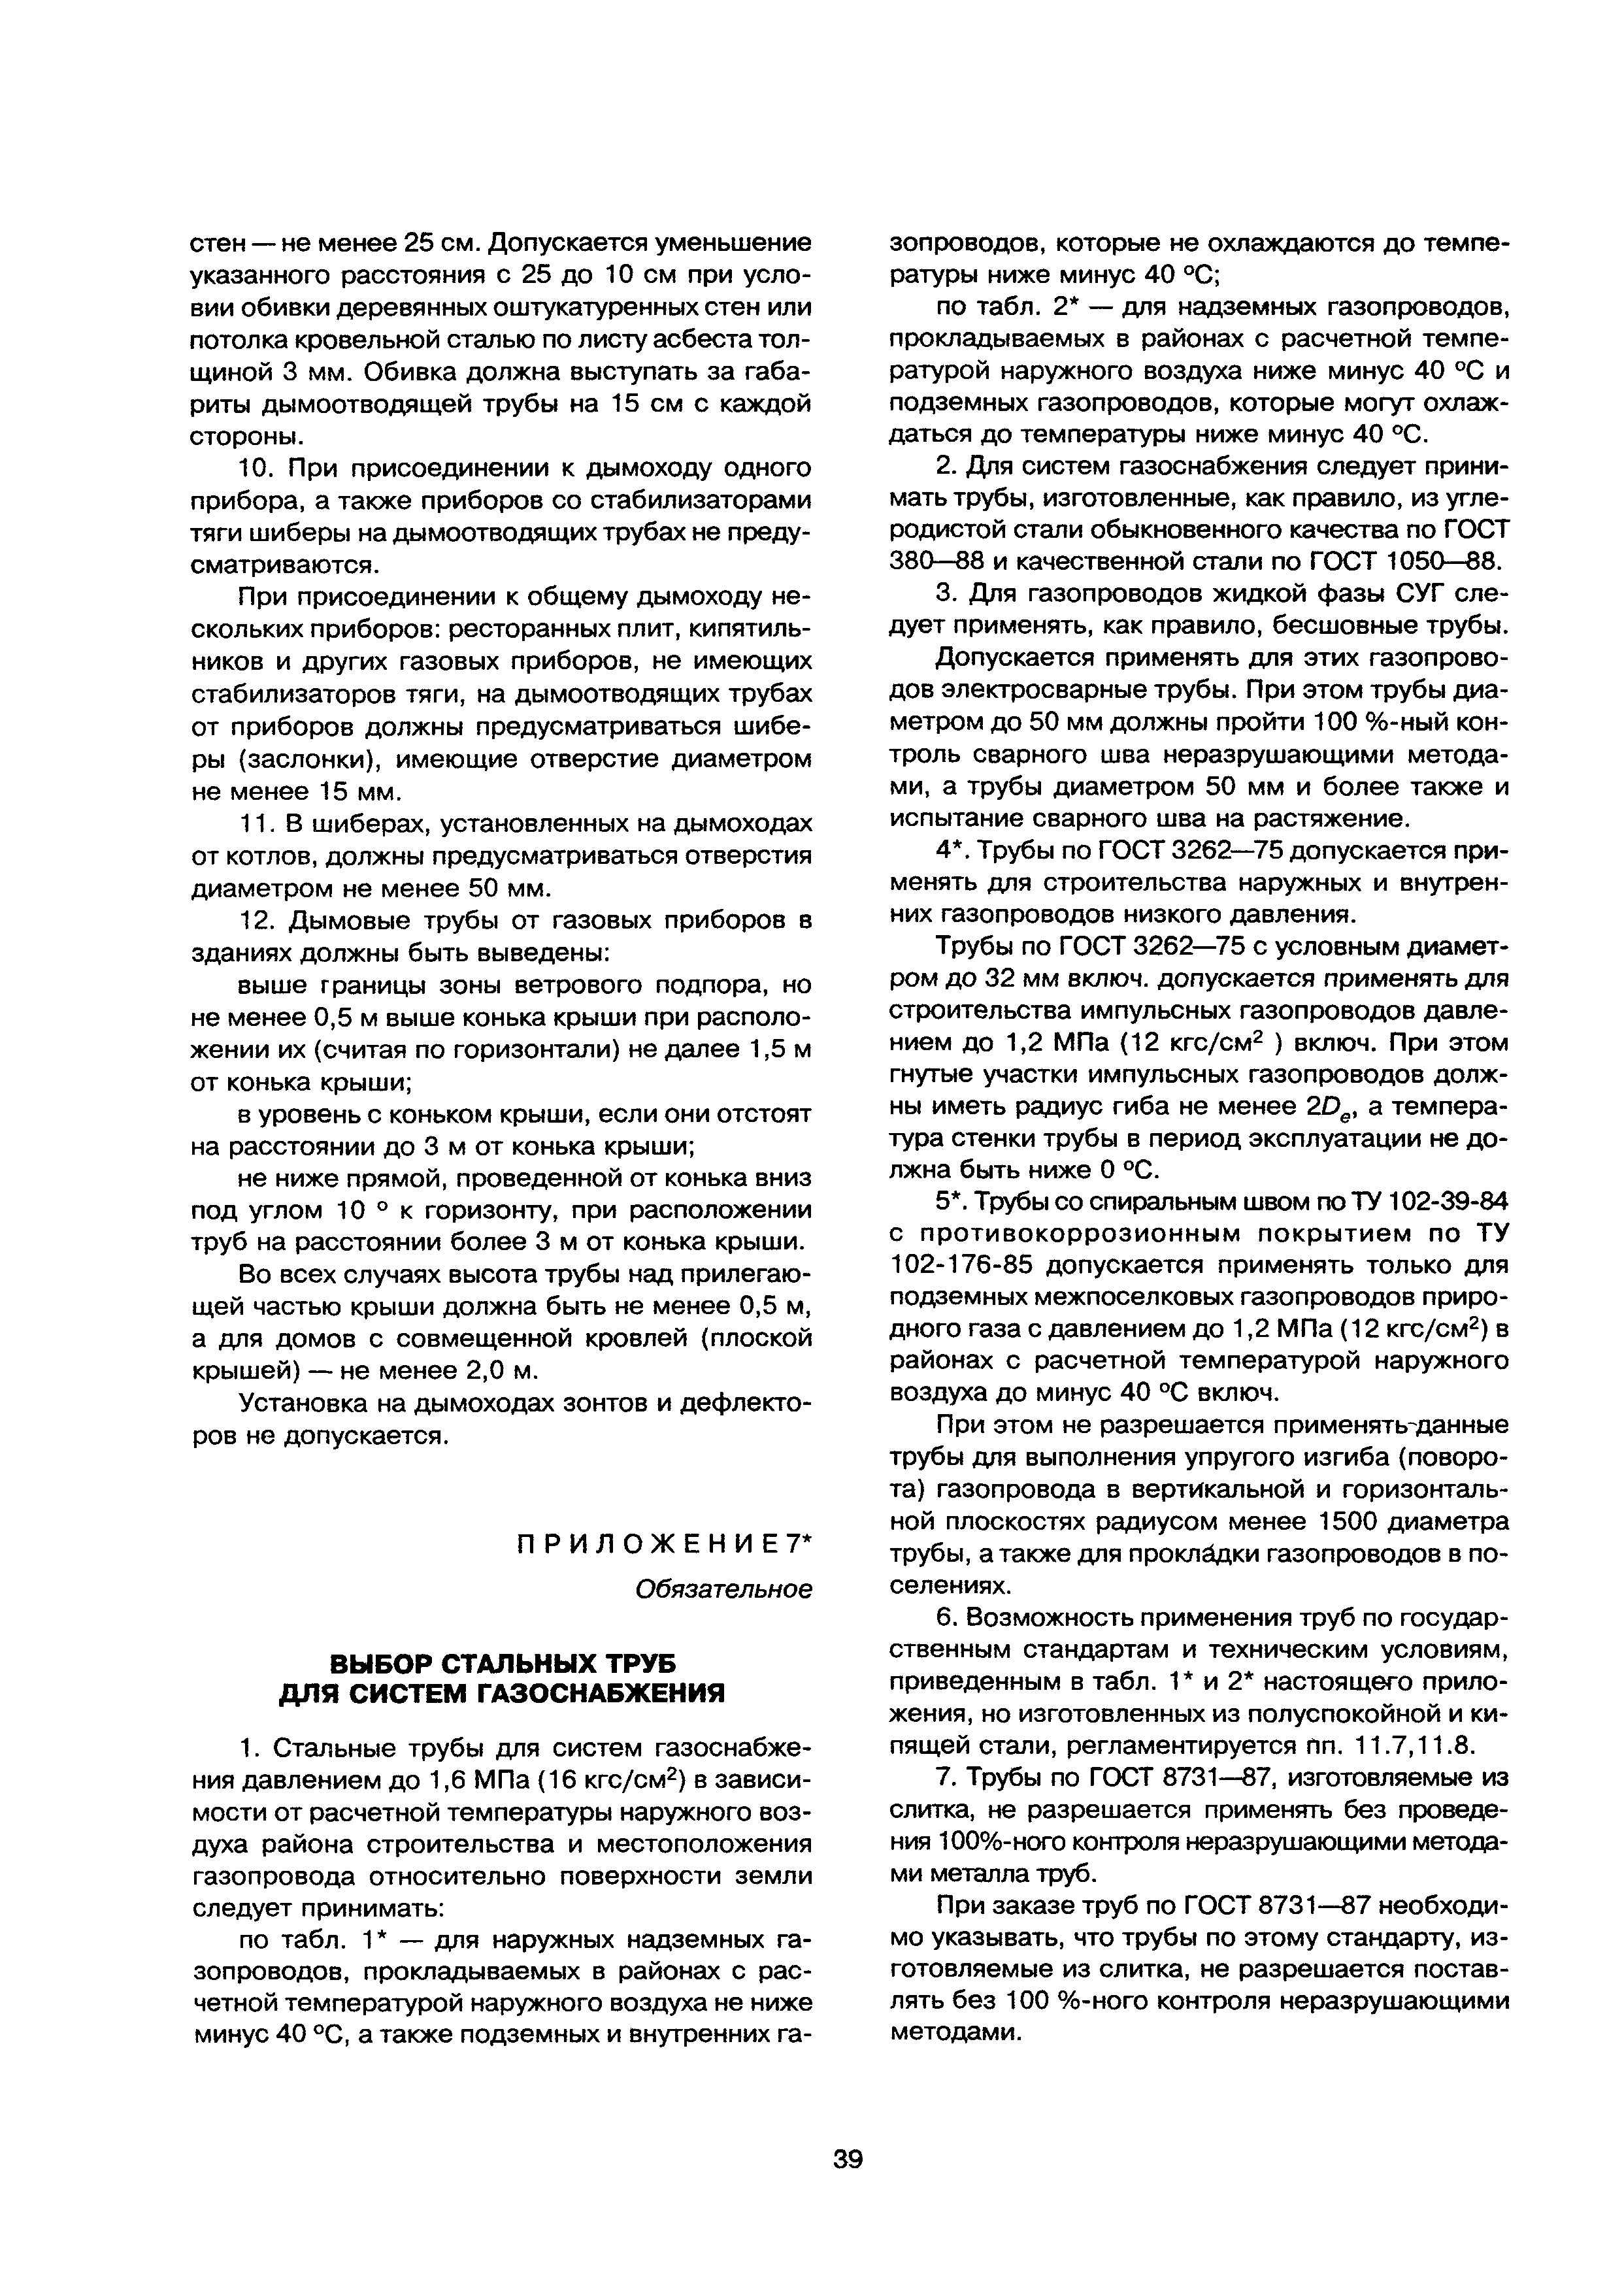 МДС 40-2.2000